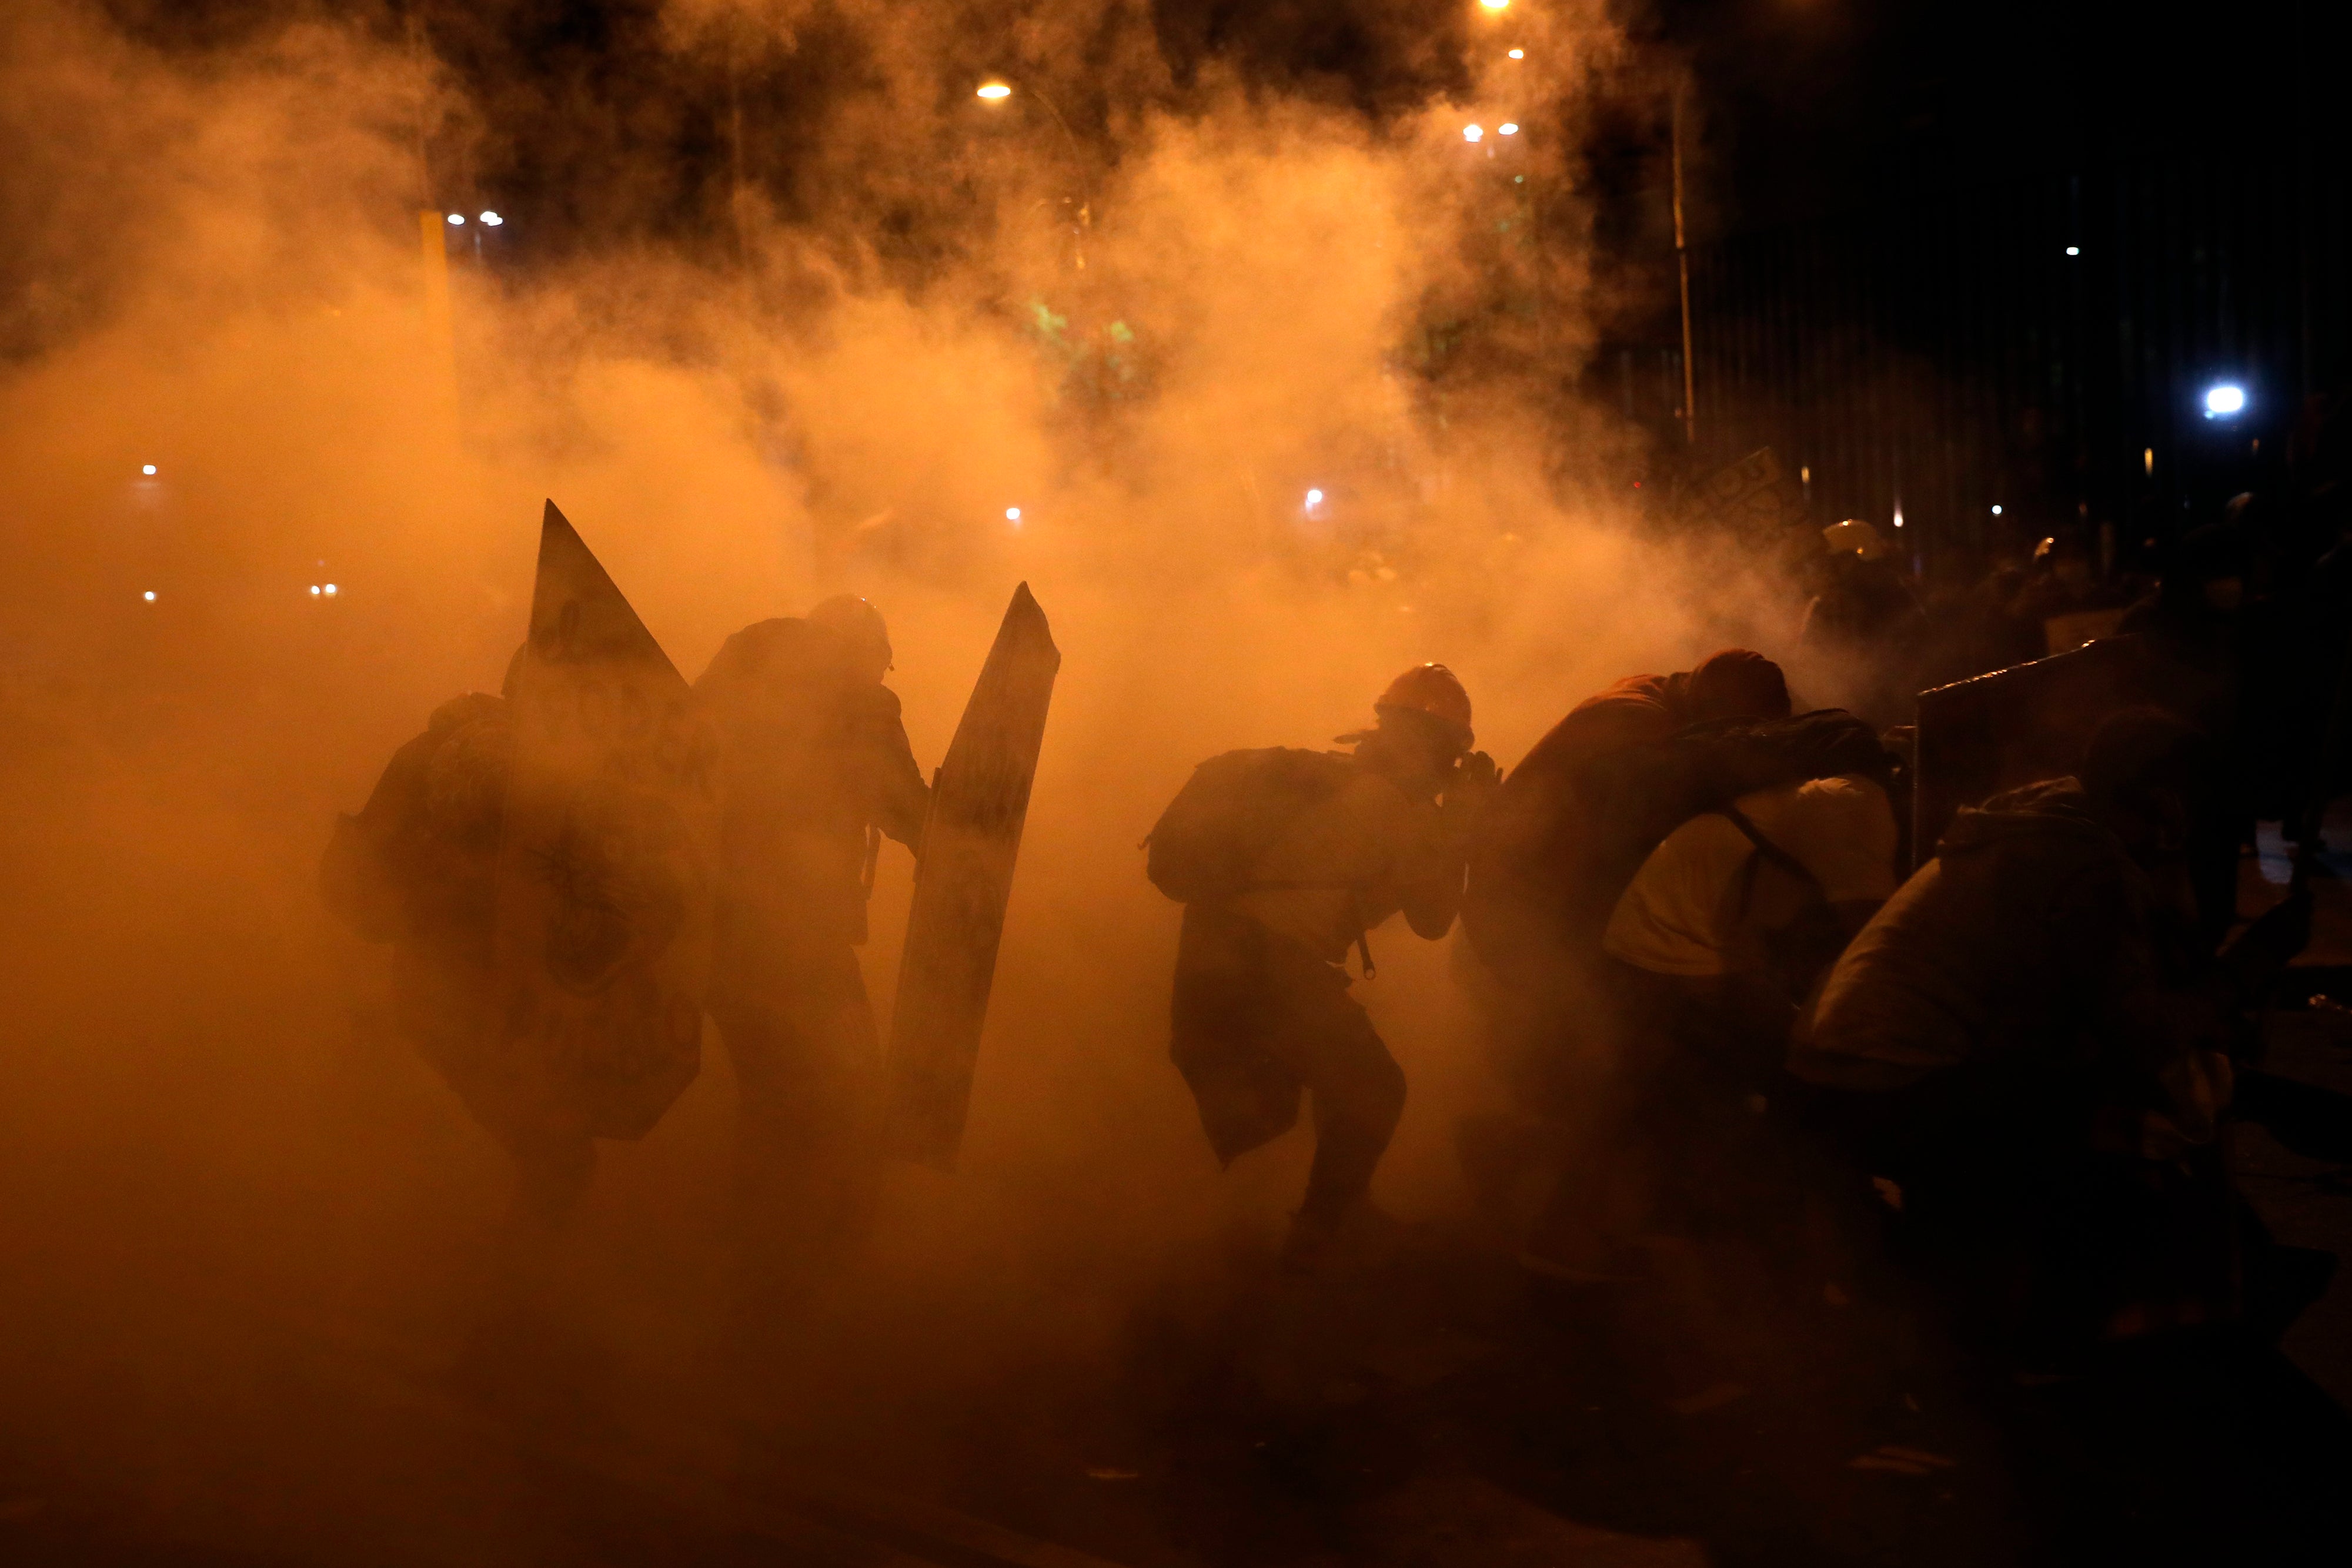 Manifestantes buscan resguardo del gas lacrimógeno lanzado por la policía para dispersar a los manifestantes reunidos en la Plaza San Martín en repudio del nuevo gobierno del presidente Manuel Merino, en Lima, el sábado 14 de noviembre de 2020.